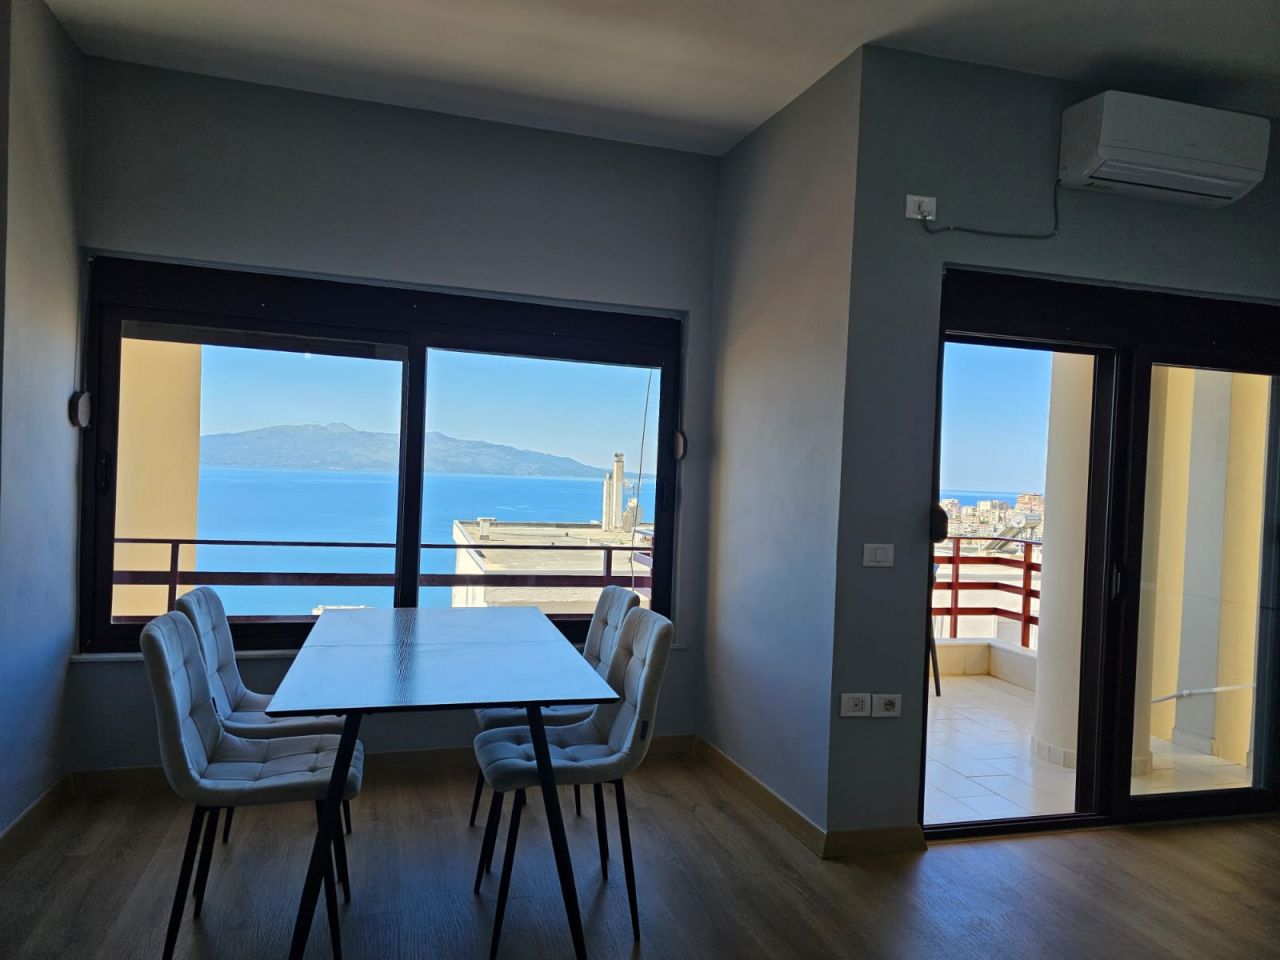 Schöne Wohnung Zum Verkauf In Saranda Albanien Mit Herrlichem Panoramablick Uber Die Bucht Von Saranda Nicht Weit Vom Stadtzentrum Entfernt